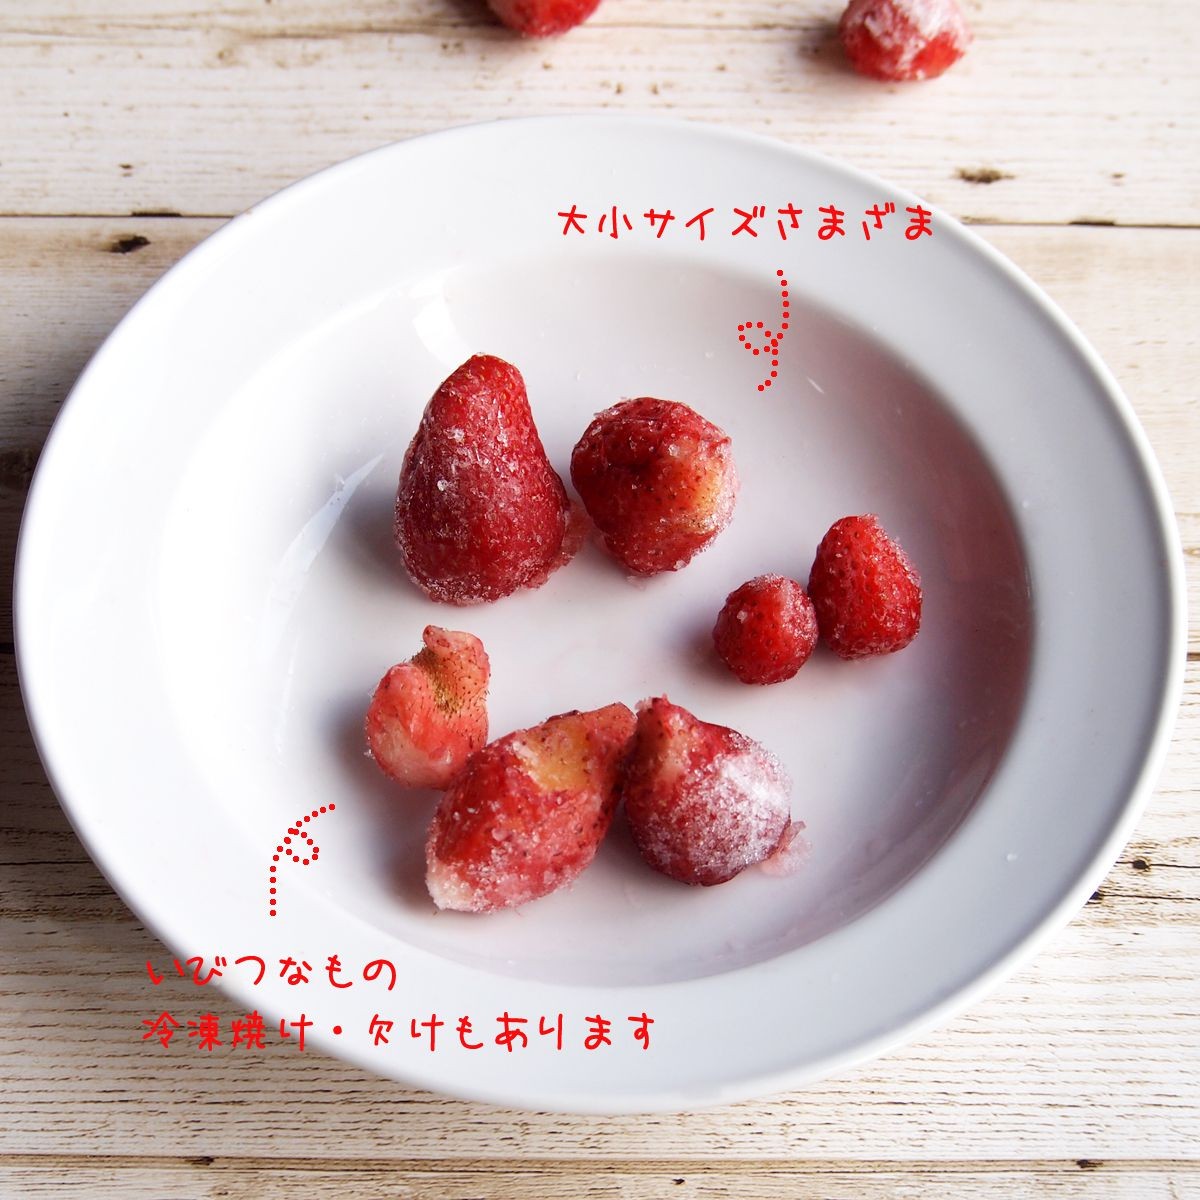 いちご 冷凍 国産 長野県 フルーツ たっぷり 大容量 700g :strawberry:わらいみらい - 通販 - Yahoo!ショッピング